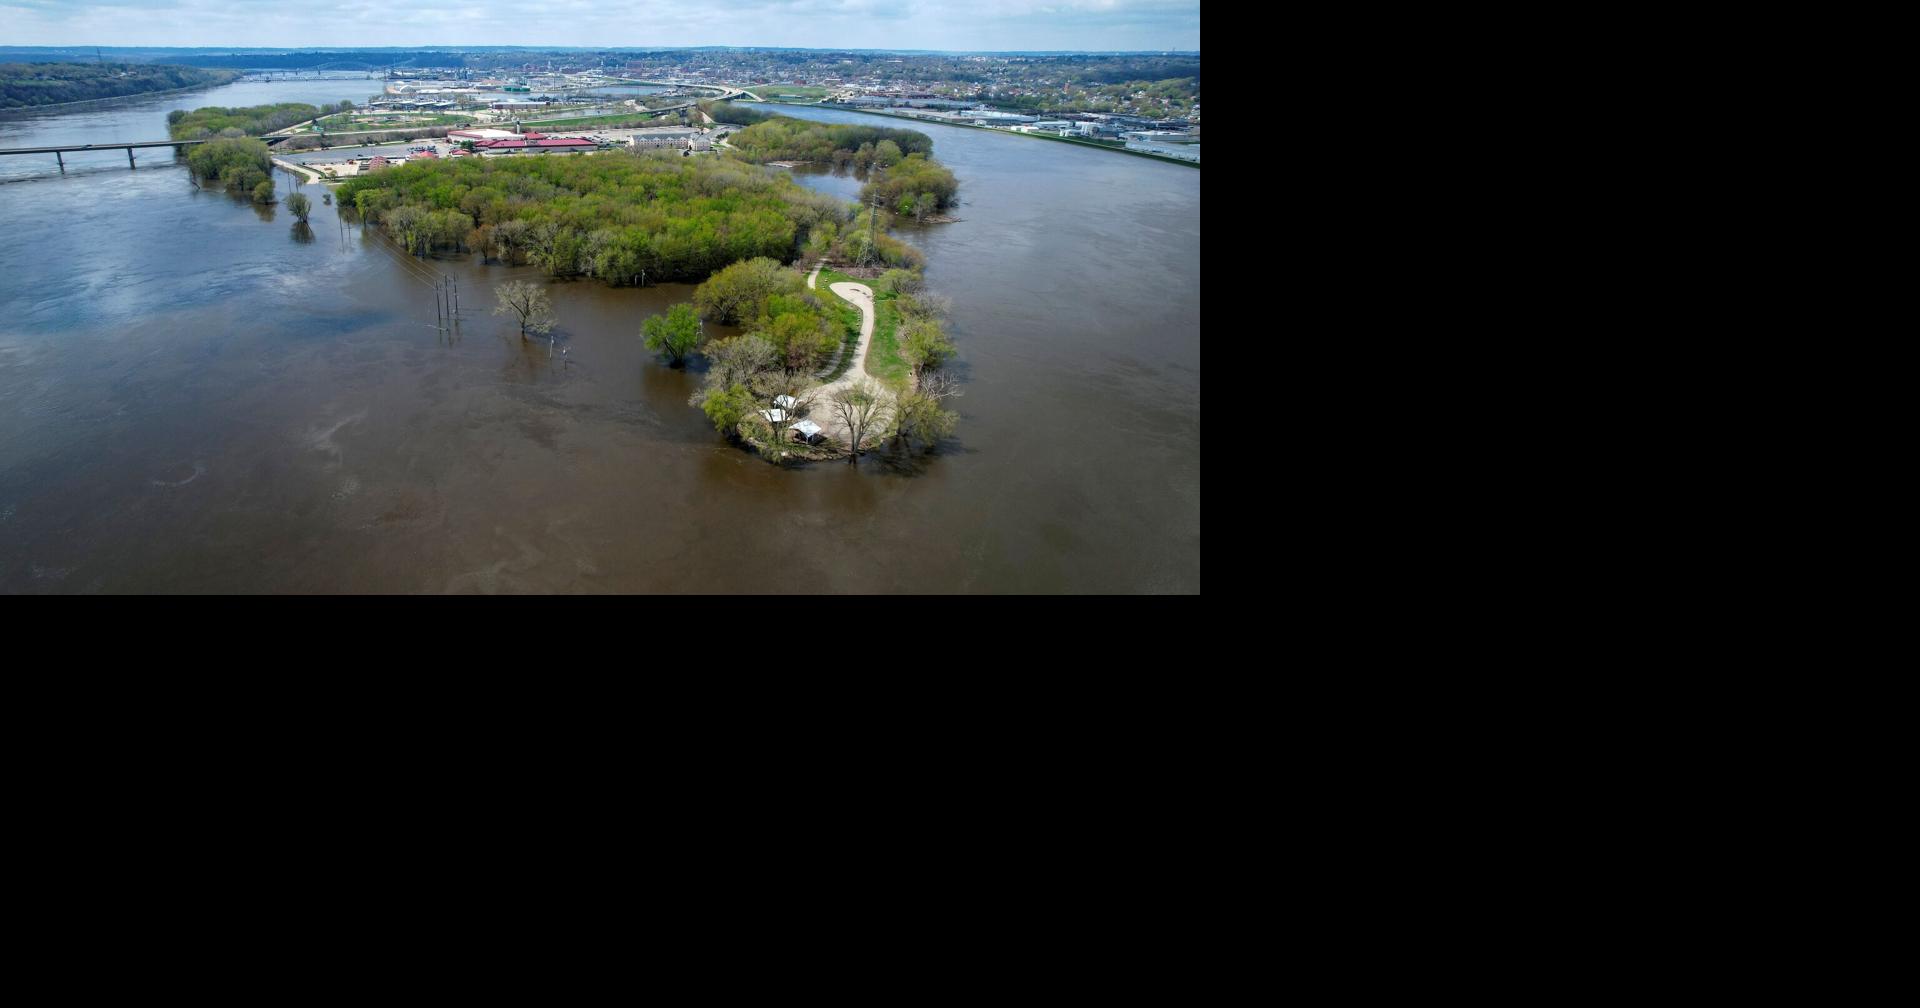 Flooding on the Upper Mississippi River to halt barge traffic for weeks